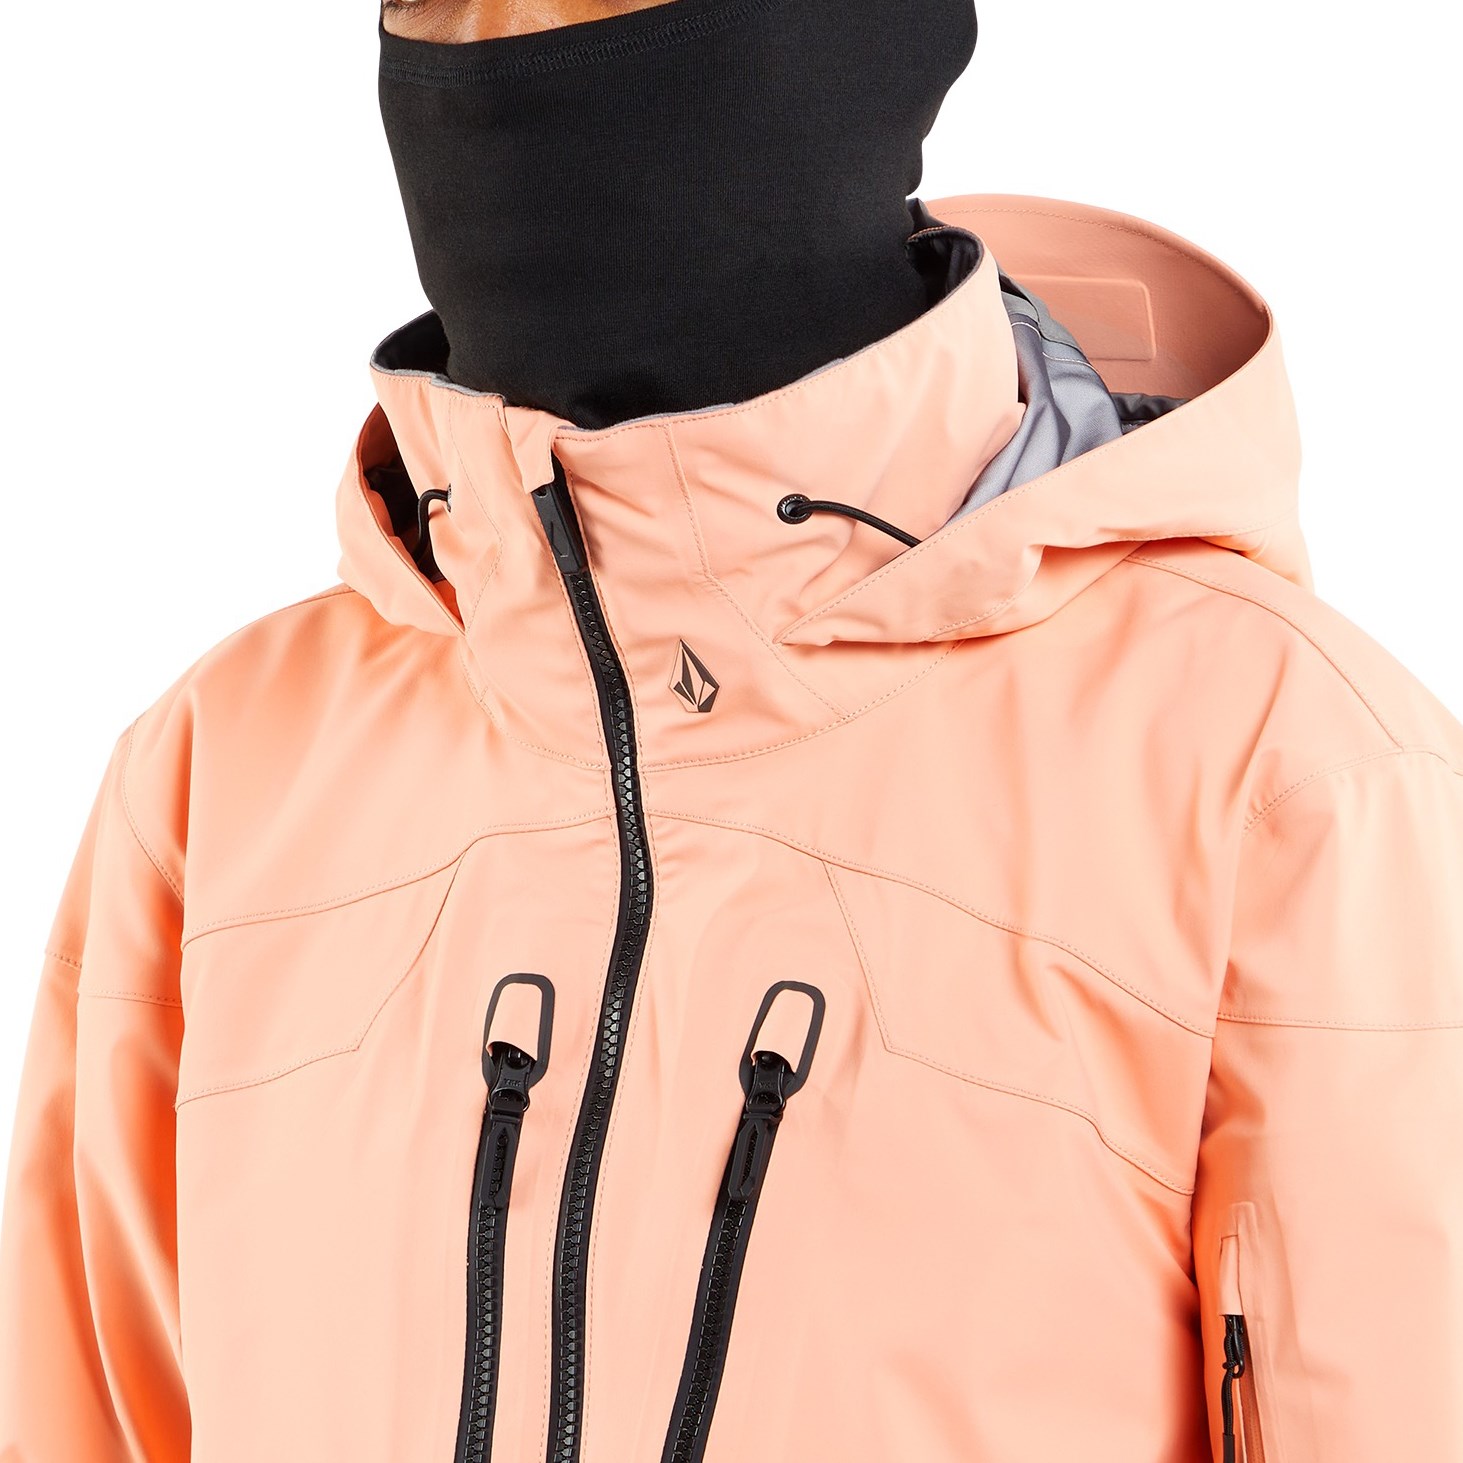 Avis Volcom Guch Stretch Gore Jacket 2020 Homme : Veste snow, test